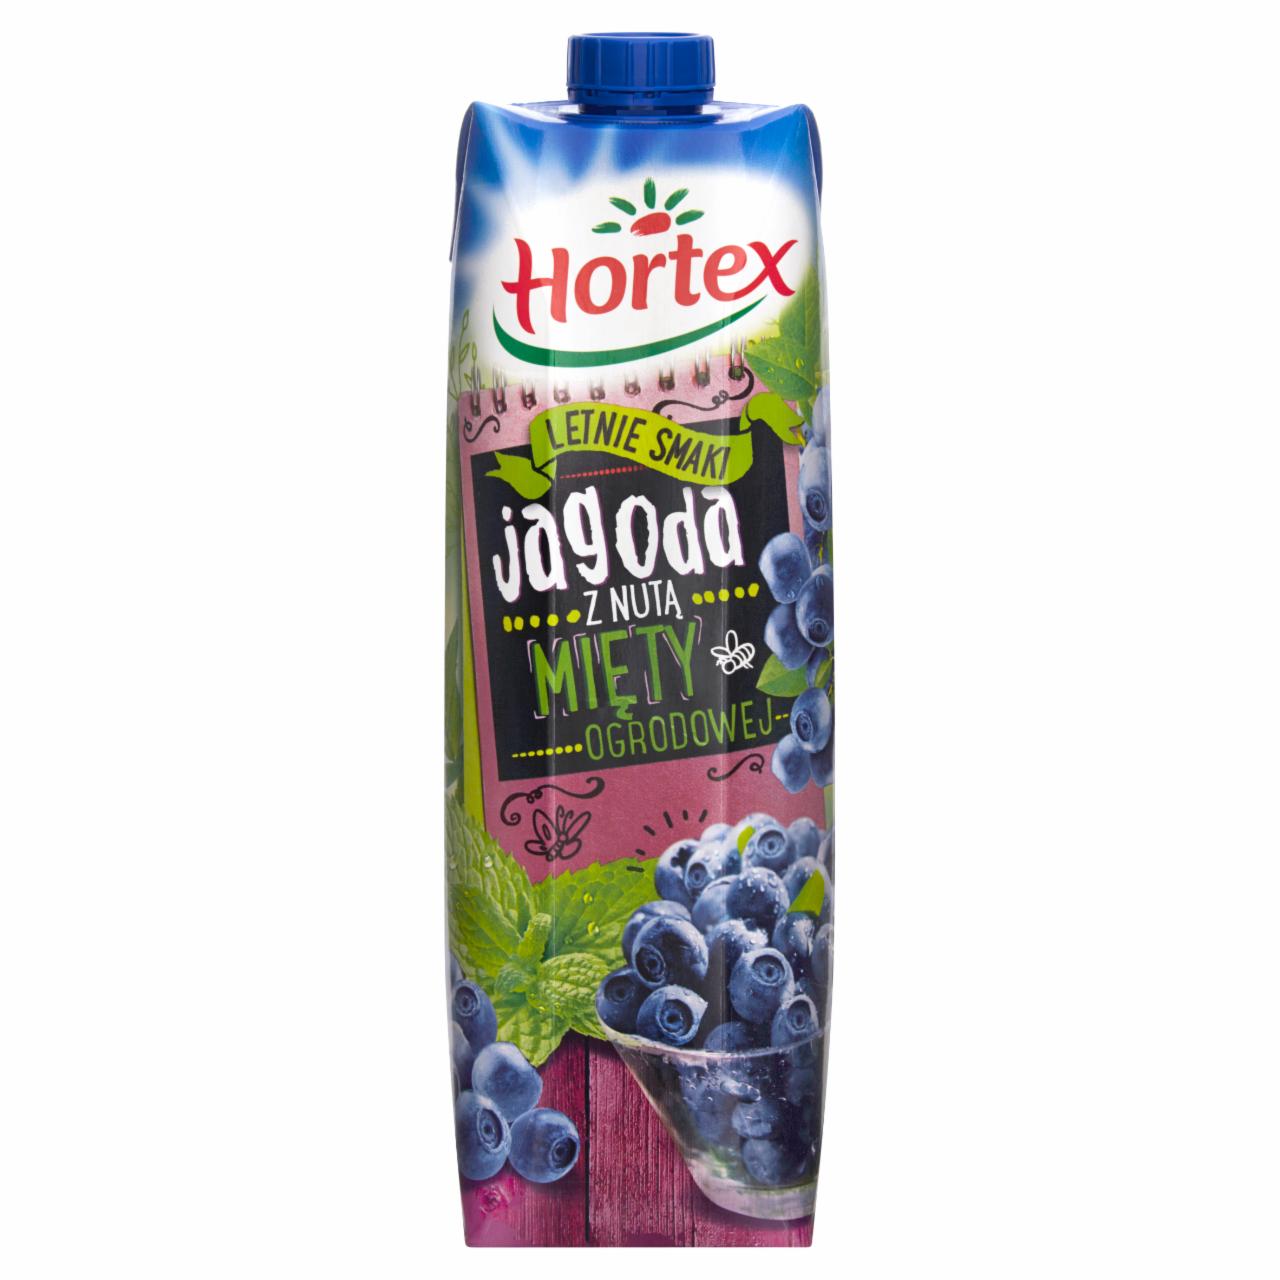 Zdjęcia - Hortex Letnie smaki Jagoda z nutą mięty ogrodowej Napój 1 l